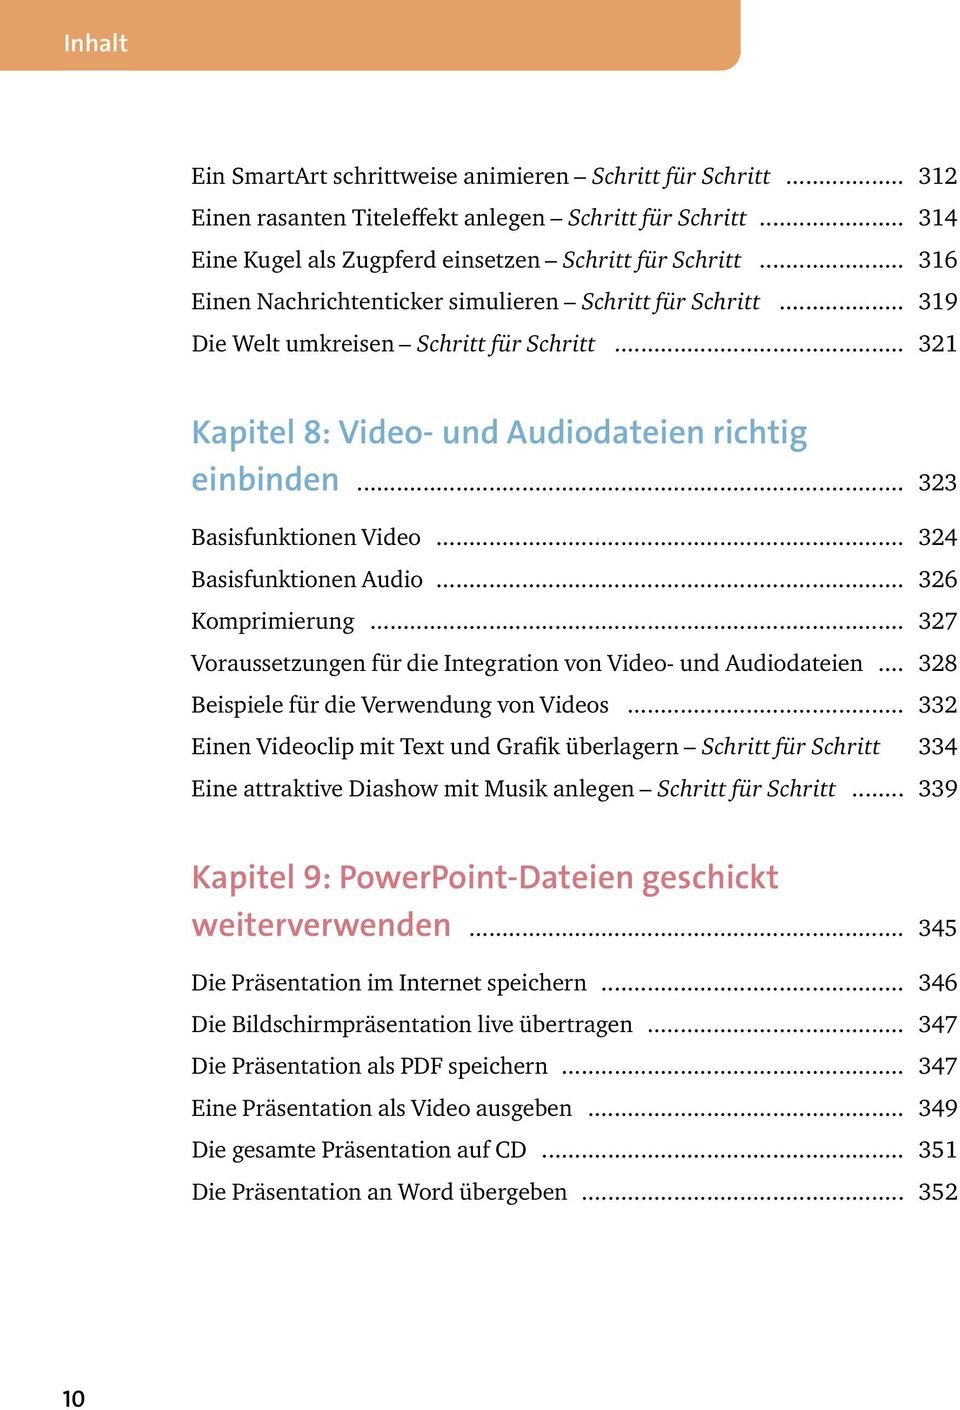 .. 324 Basisfunktionen Audio... 326 Komprimierung... 327 Voraussetzungen für die Integration von Video- und Audiodateien... 328 Beispiele für die Verwendung von Videos.